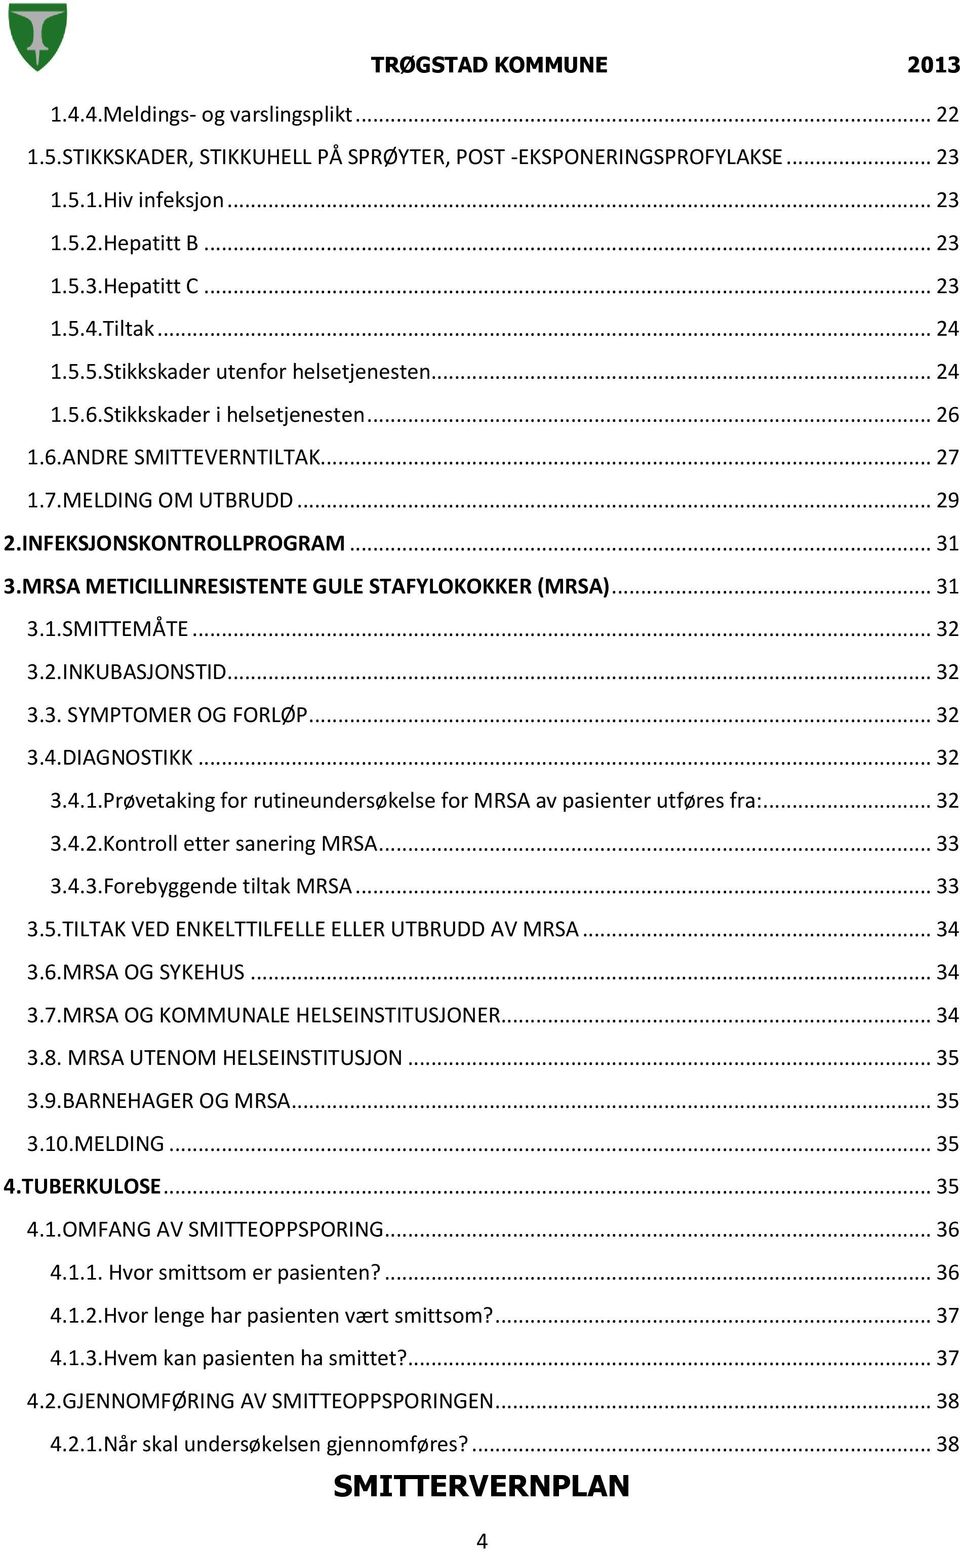 MRSA METICILLINRESISTENTE GULE STAFYLOKOKKER (MRSA)... 31 3.1.SMITTEMÅTE... 32 3.2.INKUBASJONSTID... 32 3.3. SYMPTOMER OG FORLØP... 32 3.4.DIAGNOSTIKK... 32 3.4.1.Prøvetaking for rutineundersøkelse for MRSA av pasienter utføres fra:.